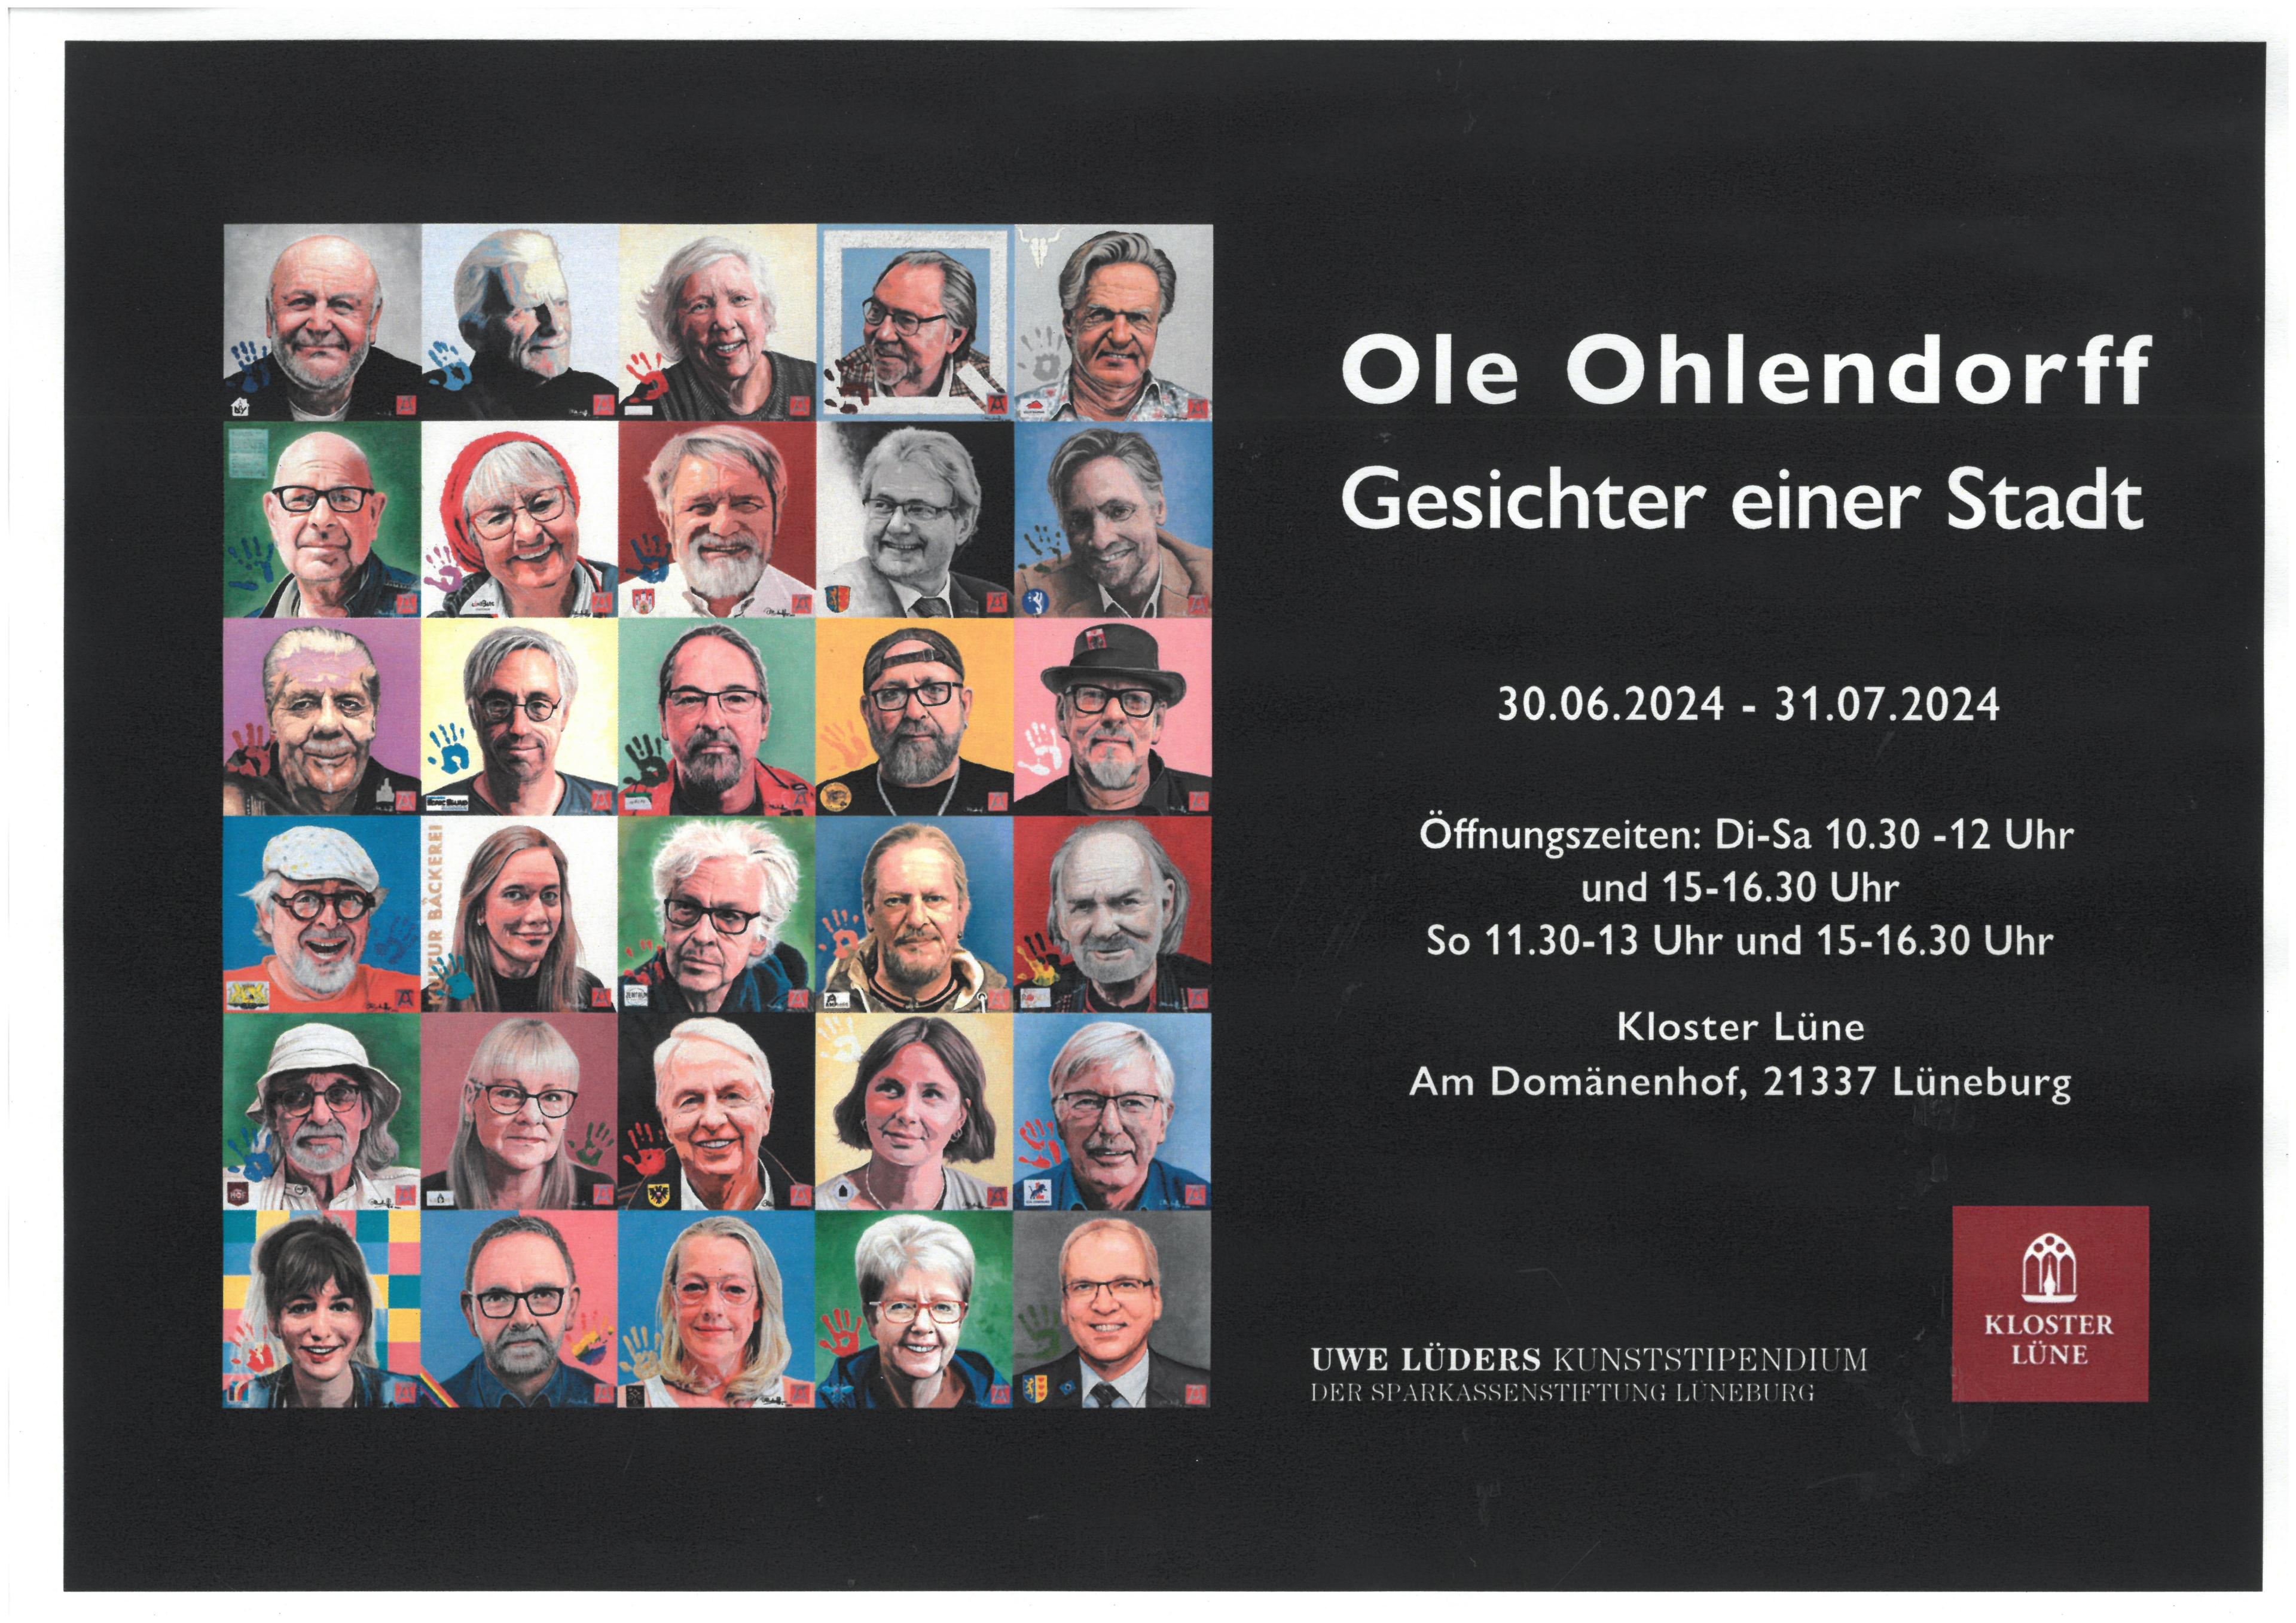 Gesichter einer Stadt von Ole Ohlendorff